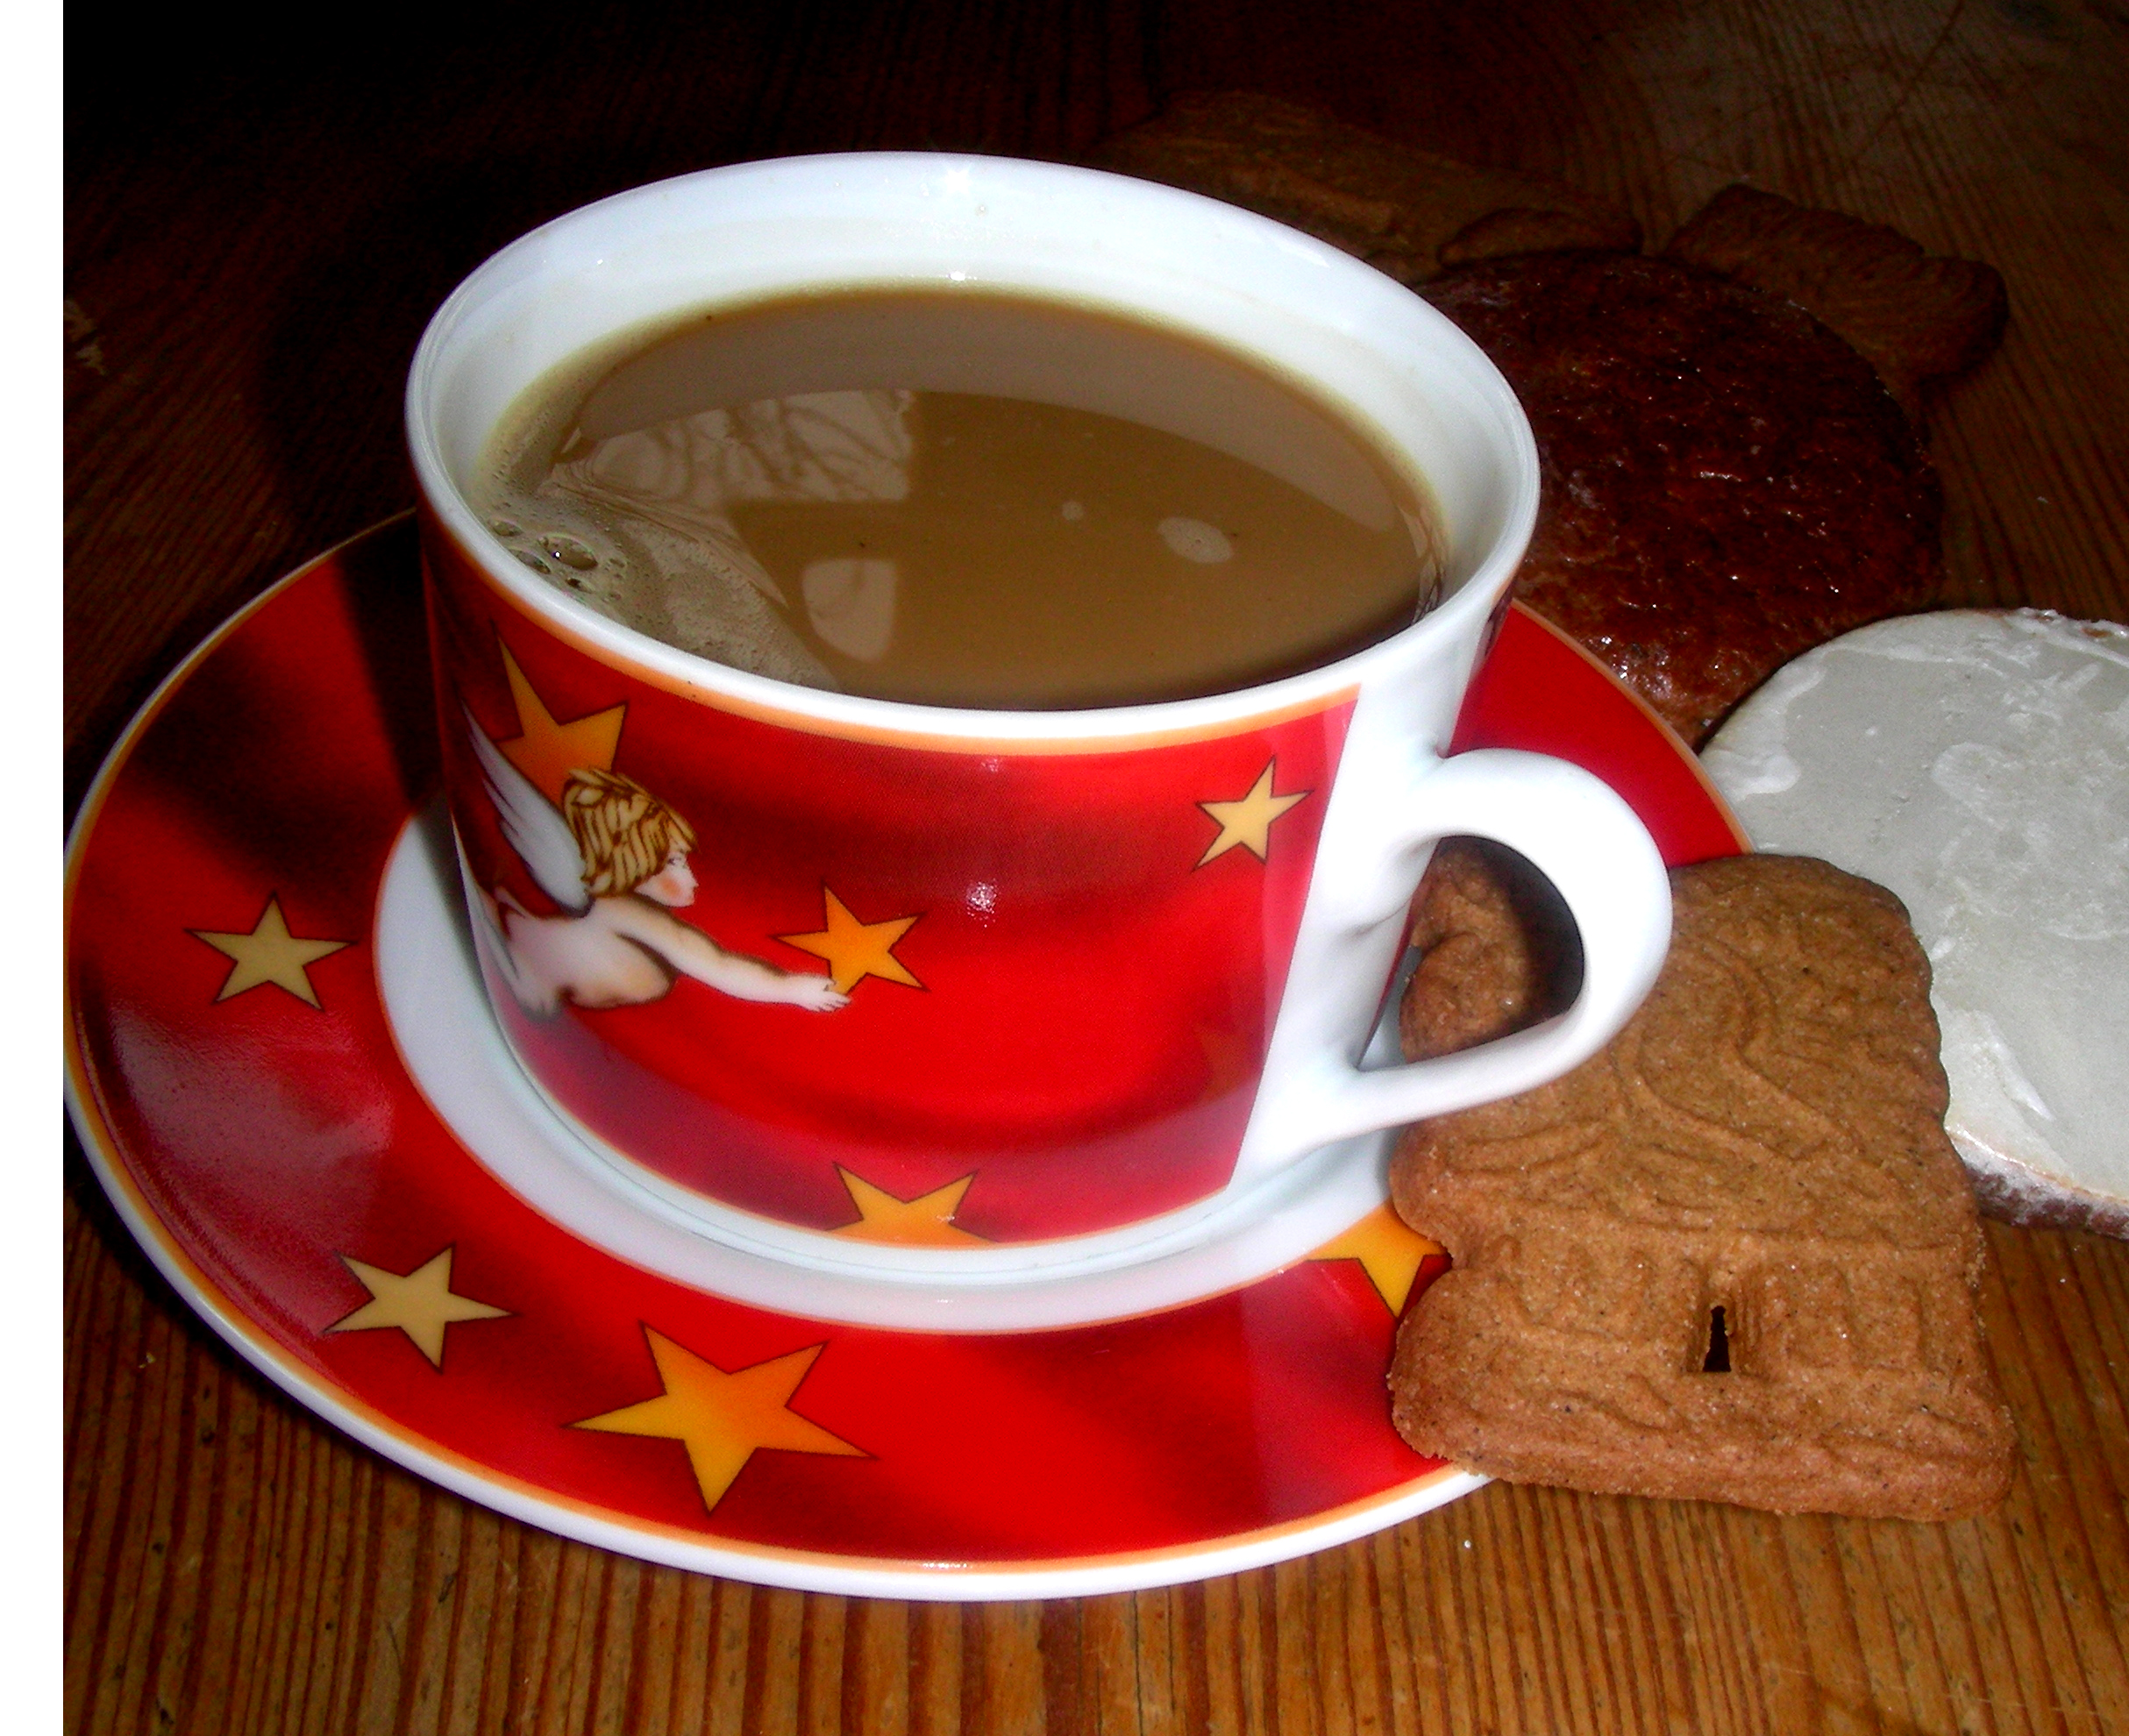 Kaffeetasse im Weihnachtsdekor mit Milchkaffee gefüllt. Auf der Untertasse liegt ein Spekulatius-Keks.